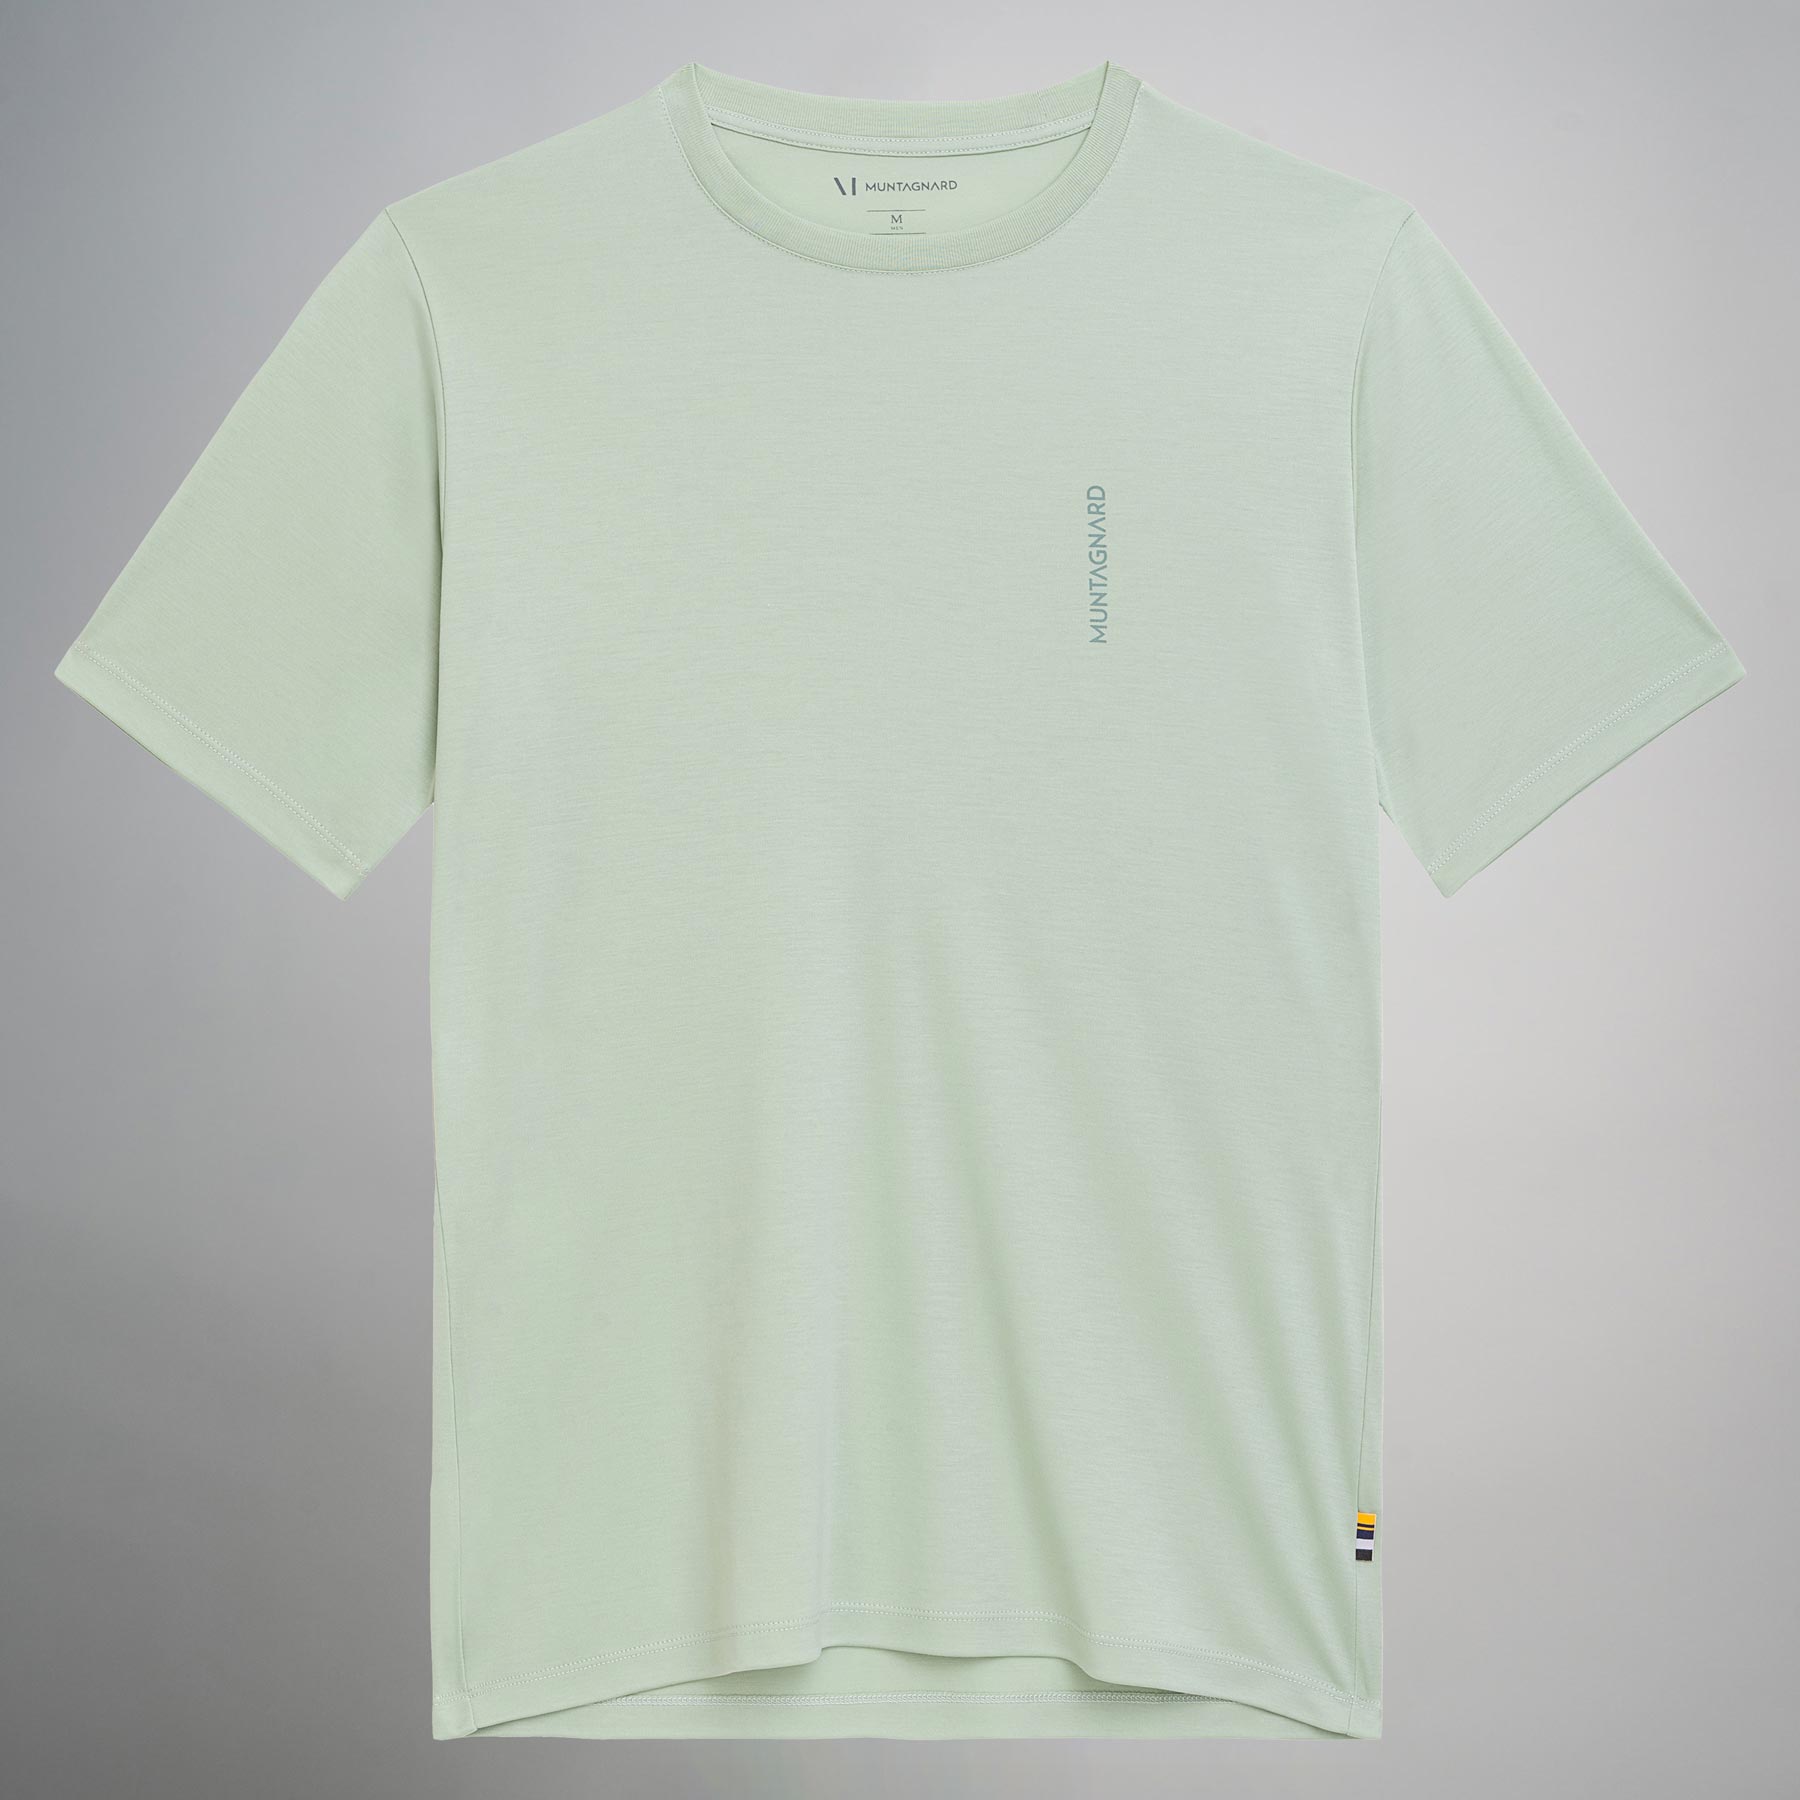 LEGNA T-Shirt Männer Muntagnard #farbe_frosty green (logo)